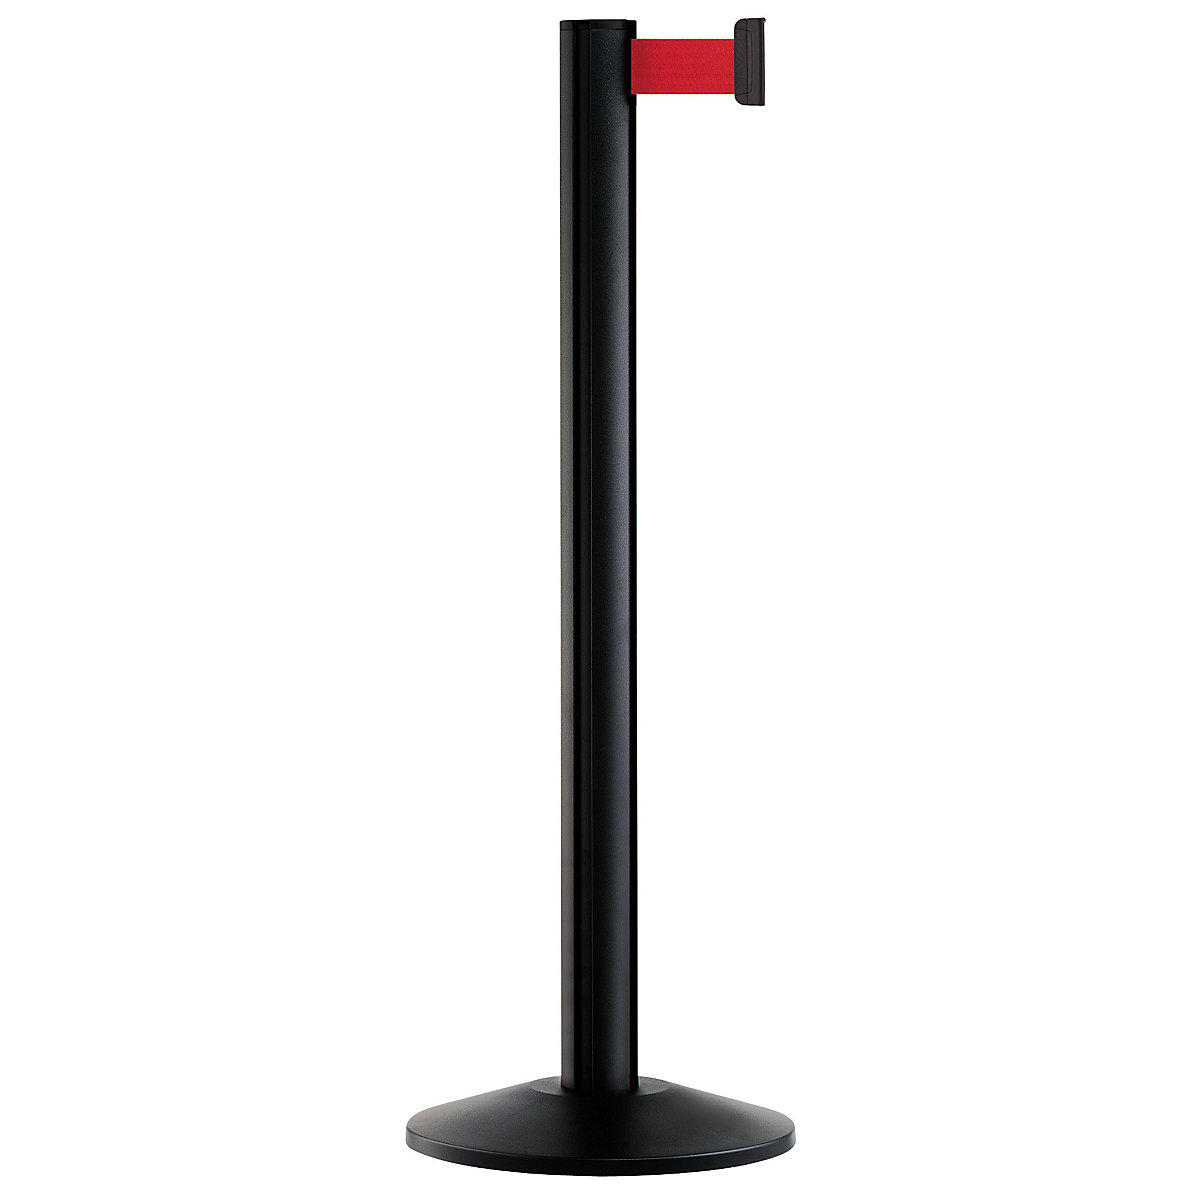 Belt post made of aluminium, post black, extends 2300 mm, belt colour red-6